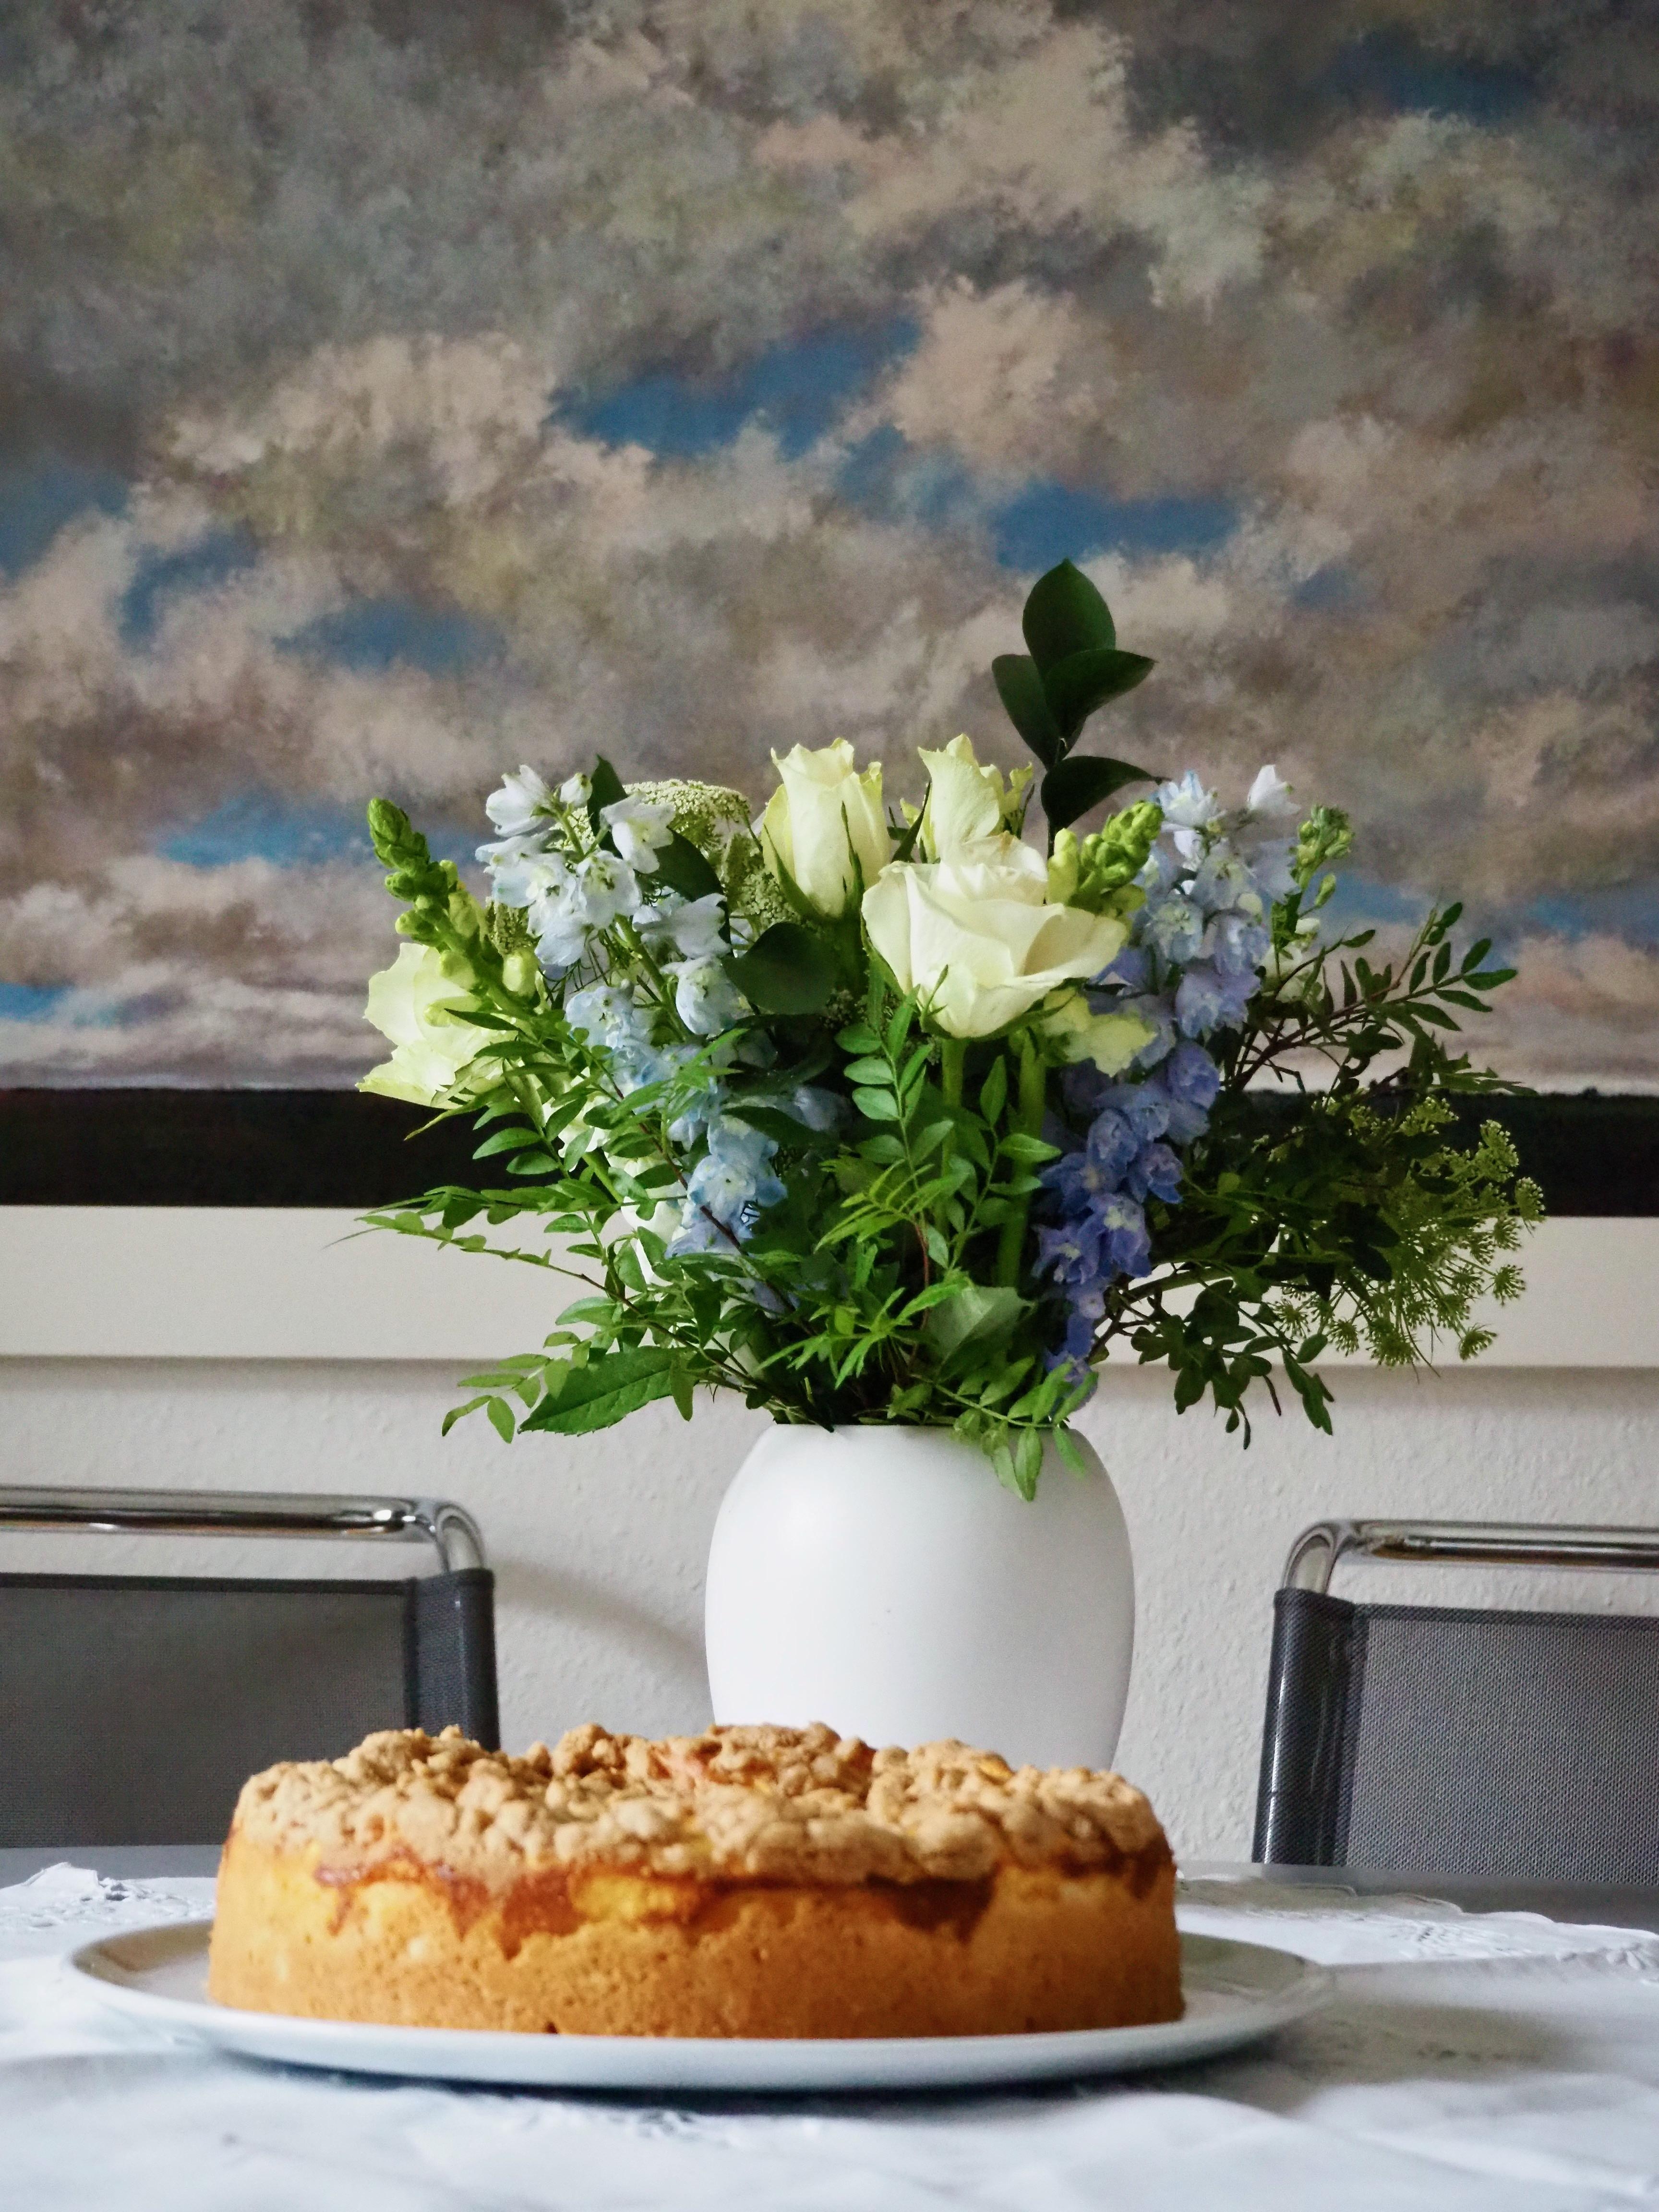 Apfel-Käse-Streuselkuchen
#ichliebebacken #immerwiedersonntags 
#backenmachtglücklich